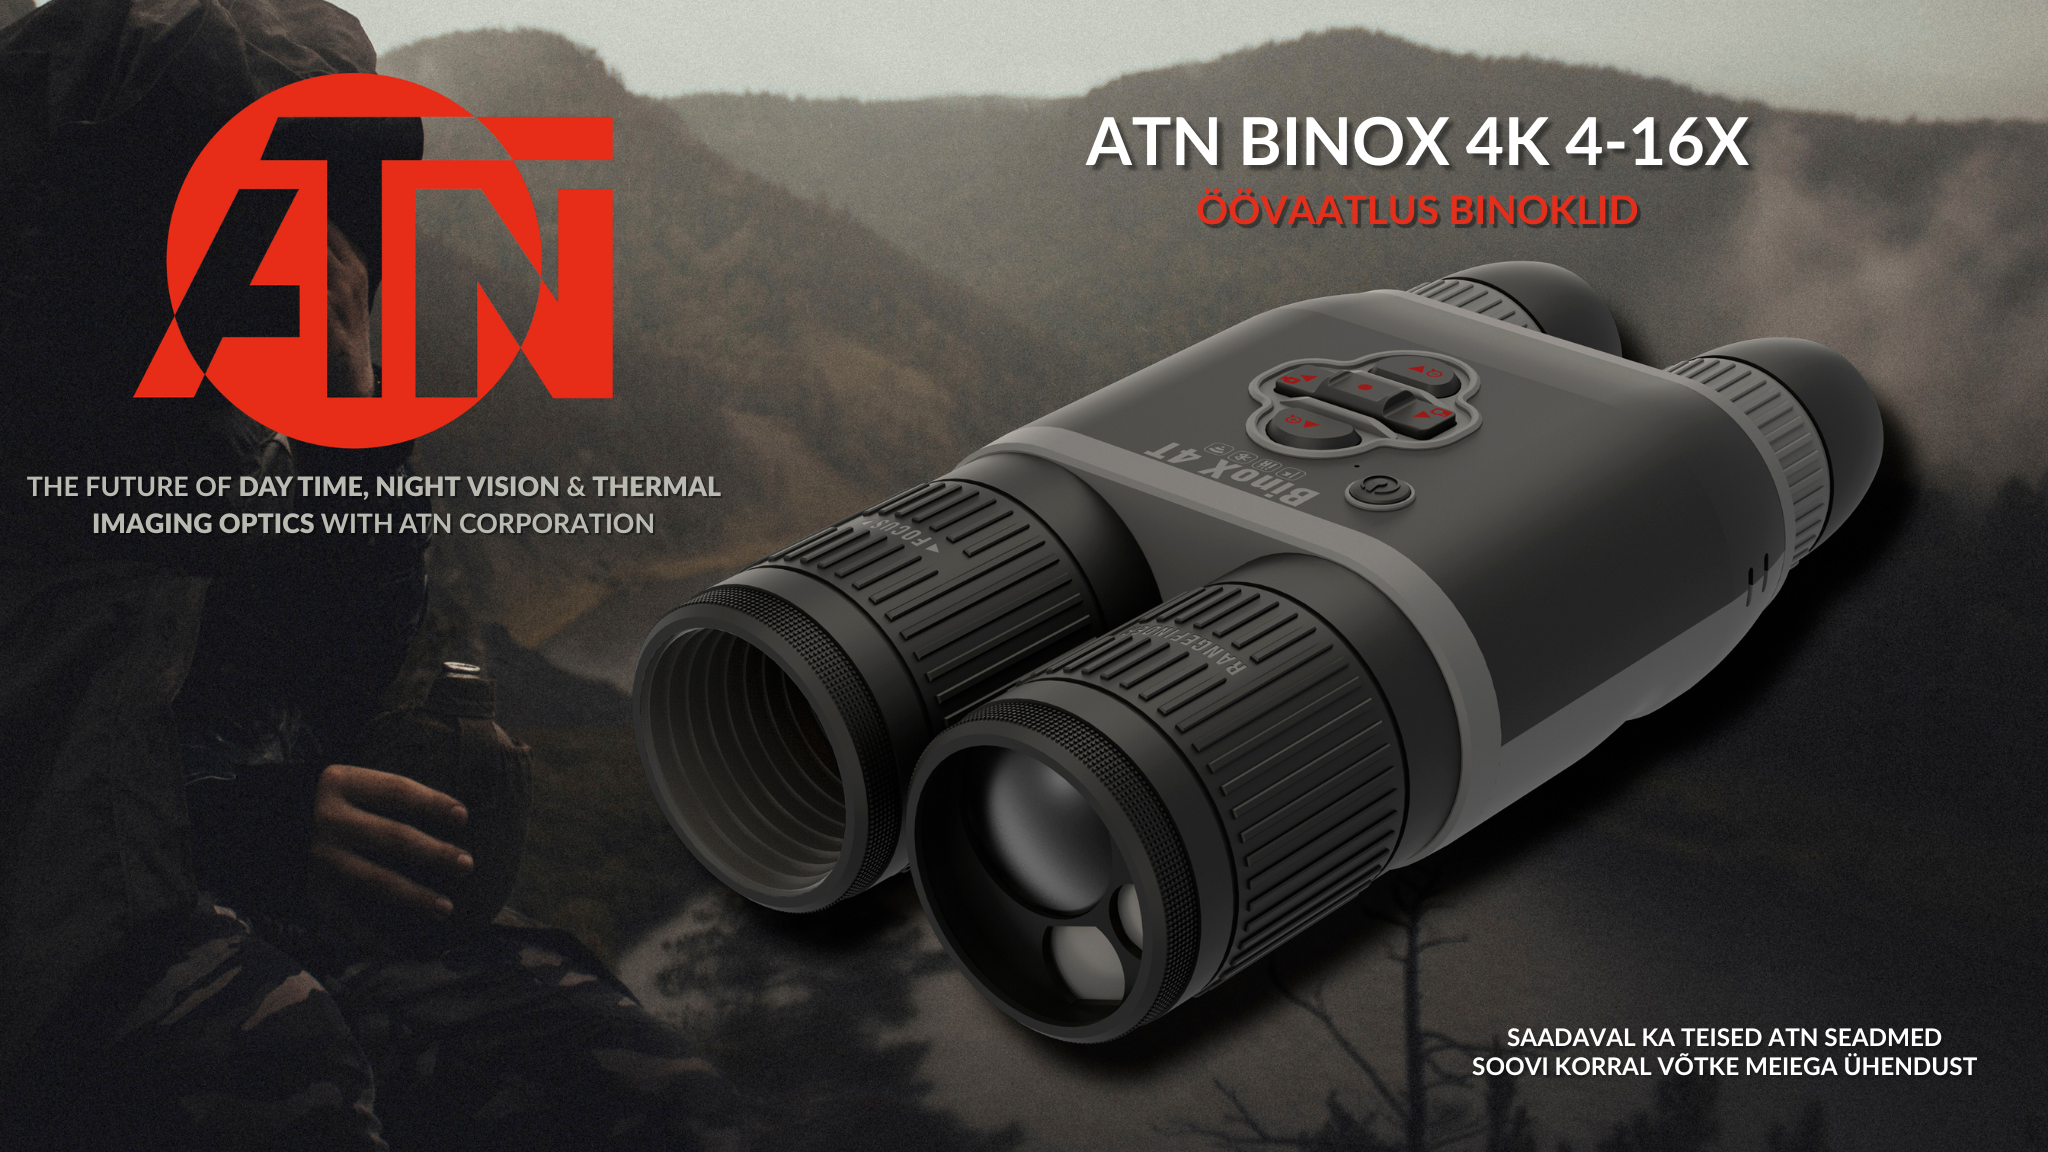 ATN BINOX 4K 4-16X (Atneu)